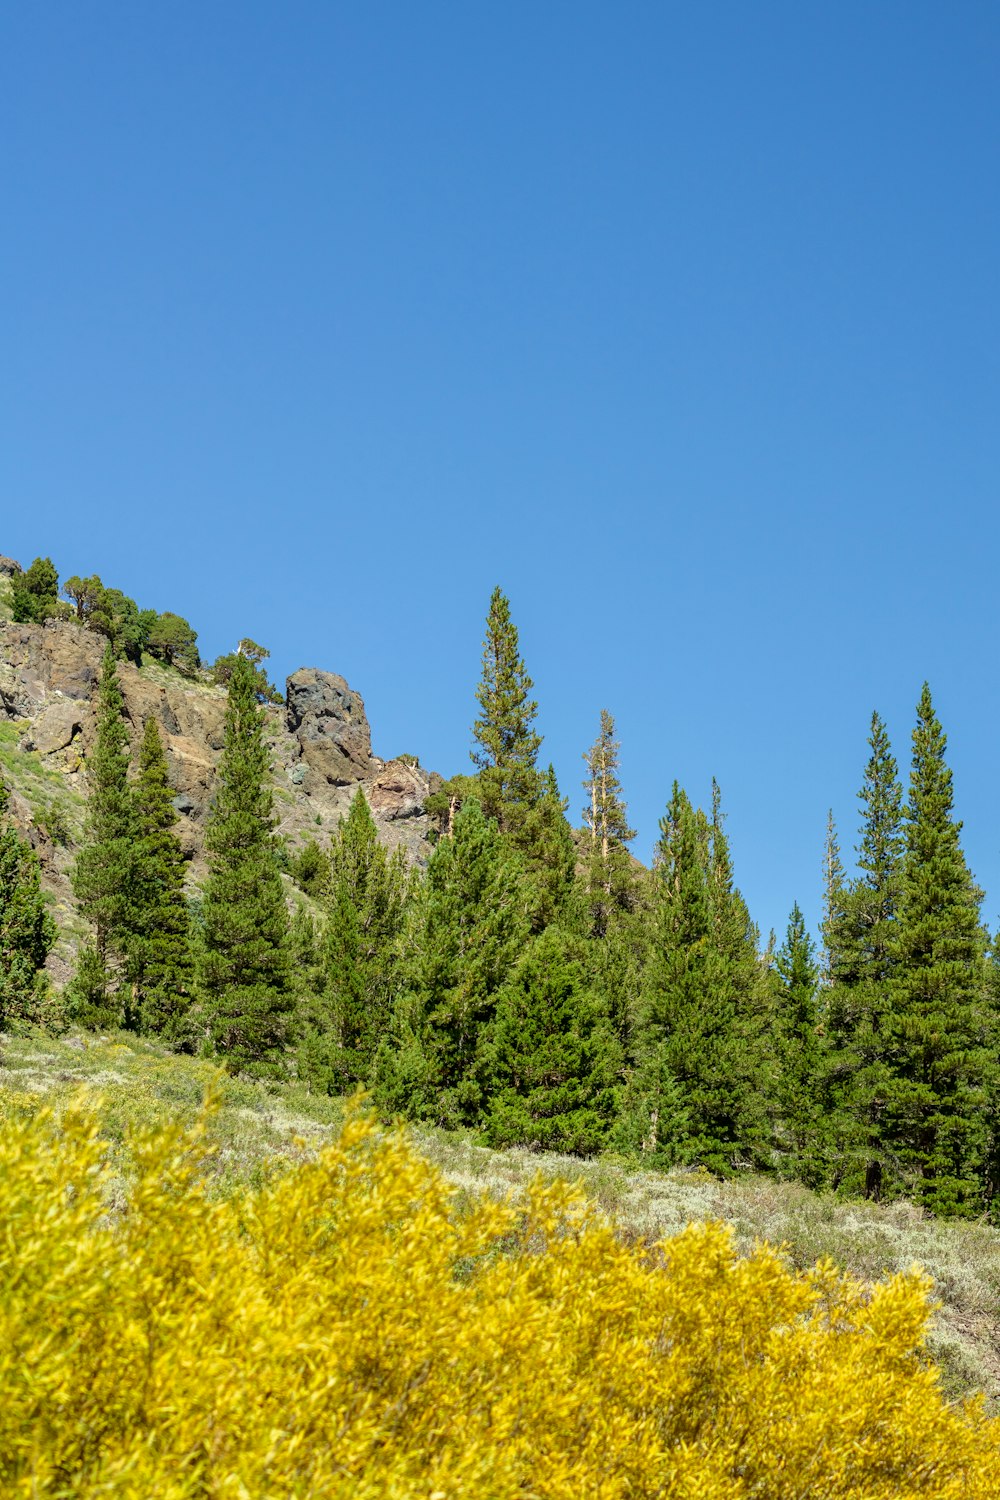 Un groupe d’arbres et une montagne rocheuse